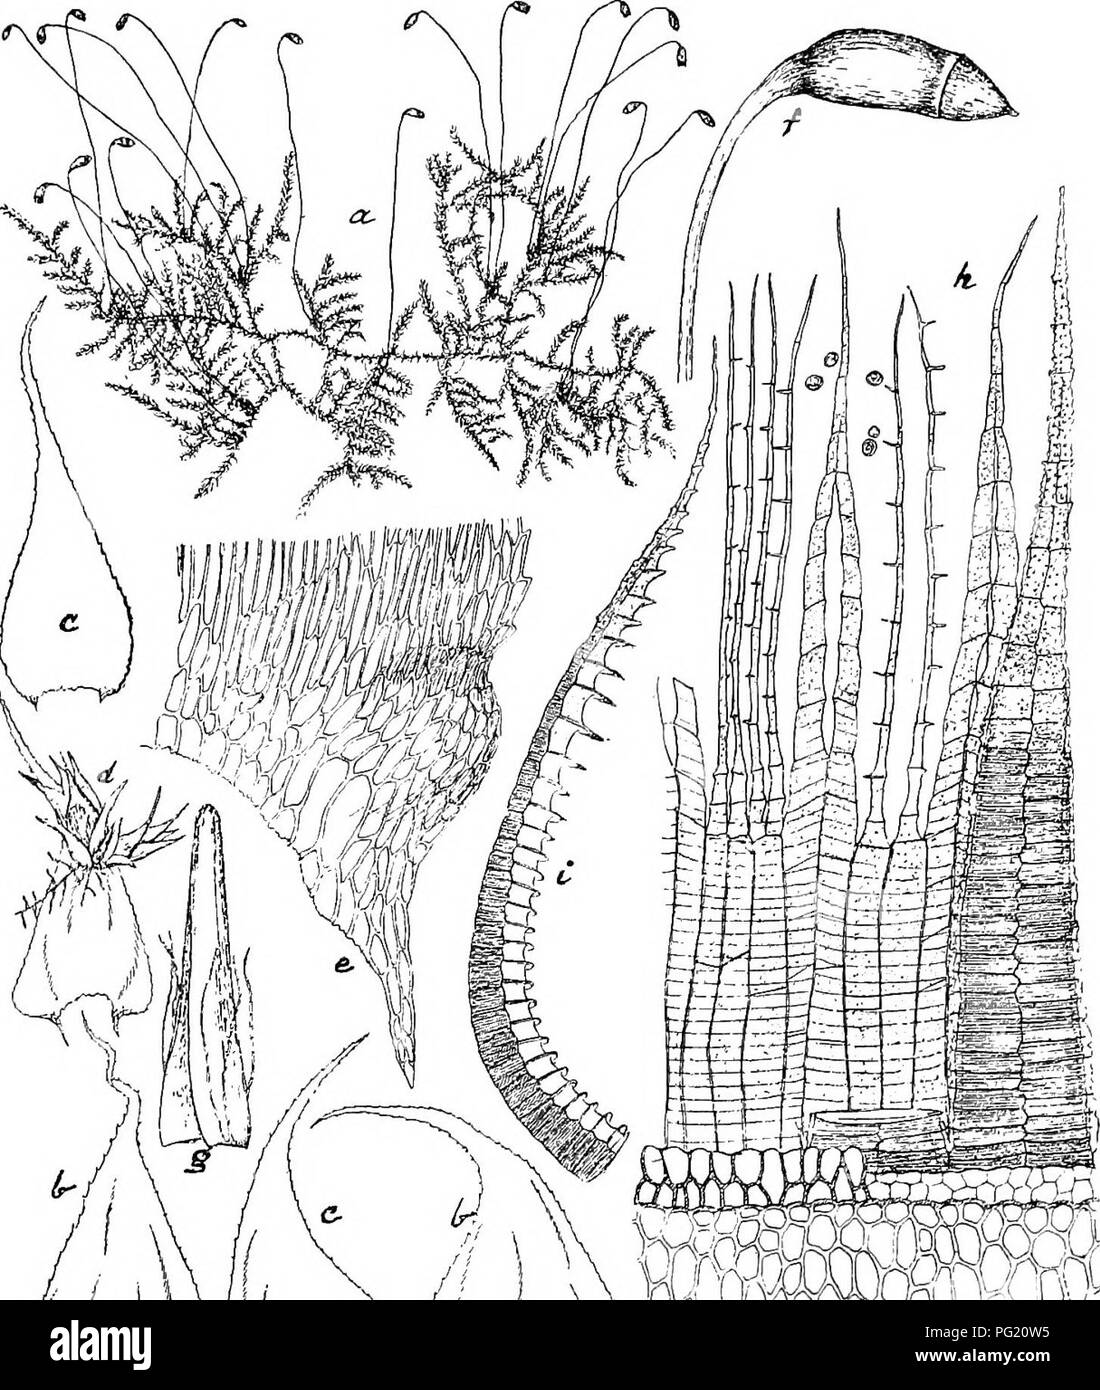 . Flore de Buitenzorg. Botany. 1459 dickere Ventralschicht, ohne Ringleisten, Lamellen glatt, wenig vortretend, in der Jugend diinn, radiar anhangselartig verbreitert. Fig. 231.. n 'immmmm Cienidinm malaeobolum (C. M.) Broth. «. Habitusbild (nat. Grosse). /. SporogoQ V°- h. Stengelbliitter V- S- H^ube V- c. Astblatter V- ''• Peristom '-^. d. (/ Zwergpflanze auf einem Stengelblalt. 7. i. Bxostomzalin im Profil gesehen t^a. e. Battecken mit herablaufenden Zellen !-^. Endostom gelblieh, hyalin, fein papillos, Grundhaut '/a hoch, Fortsatze spaltenartig durchbvochen. Wimpern 2—i, etwas. Please note Stock Photo